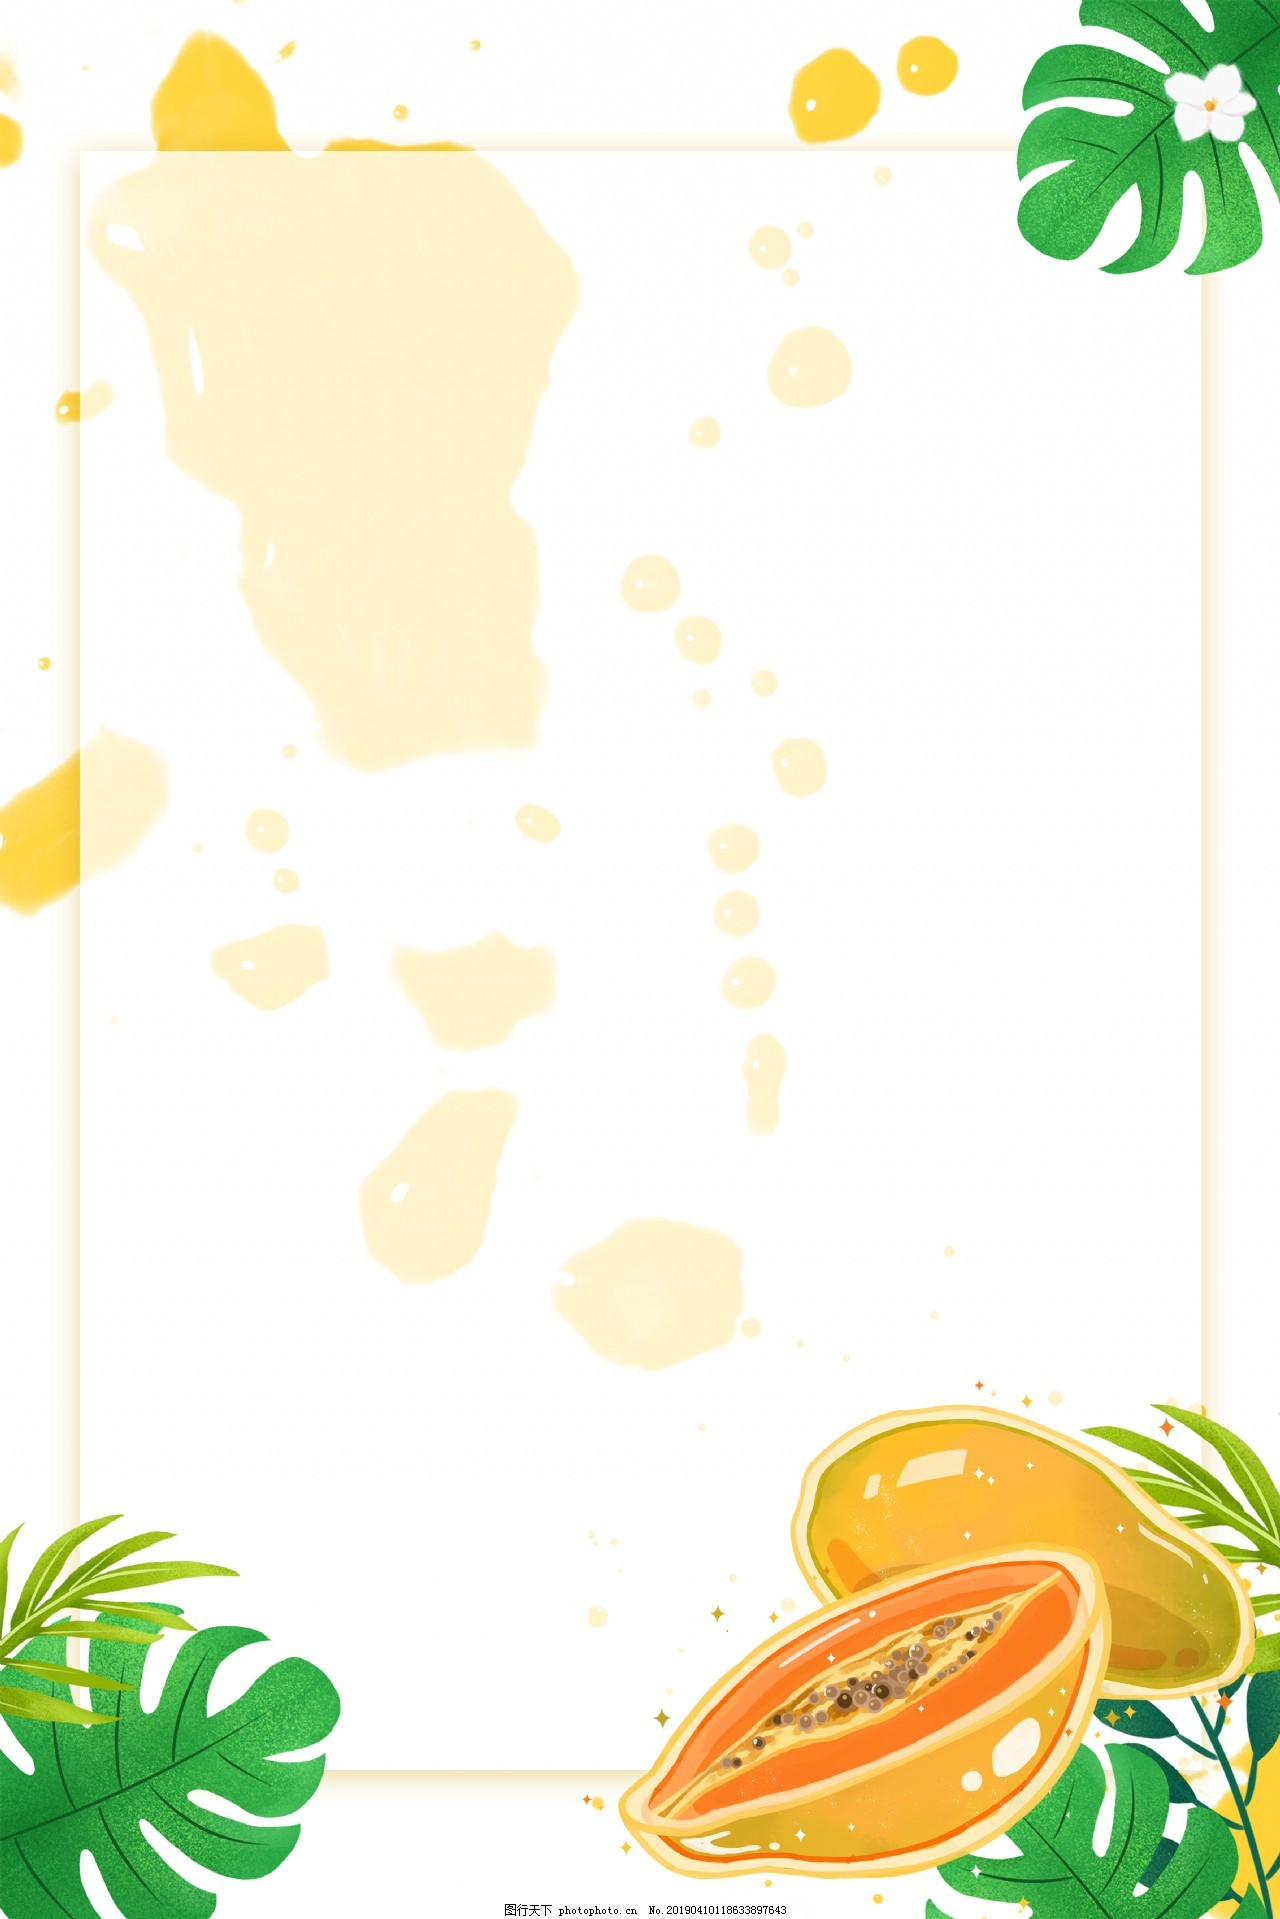 ‘~七月水果白色背景素材图片_H5背景_底纹边框-  ~’ 的图片